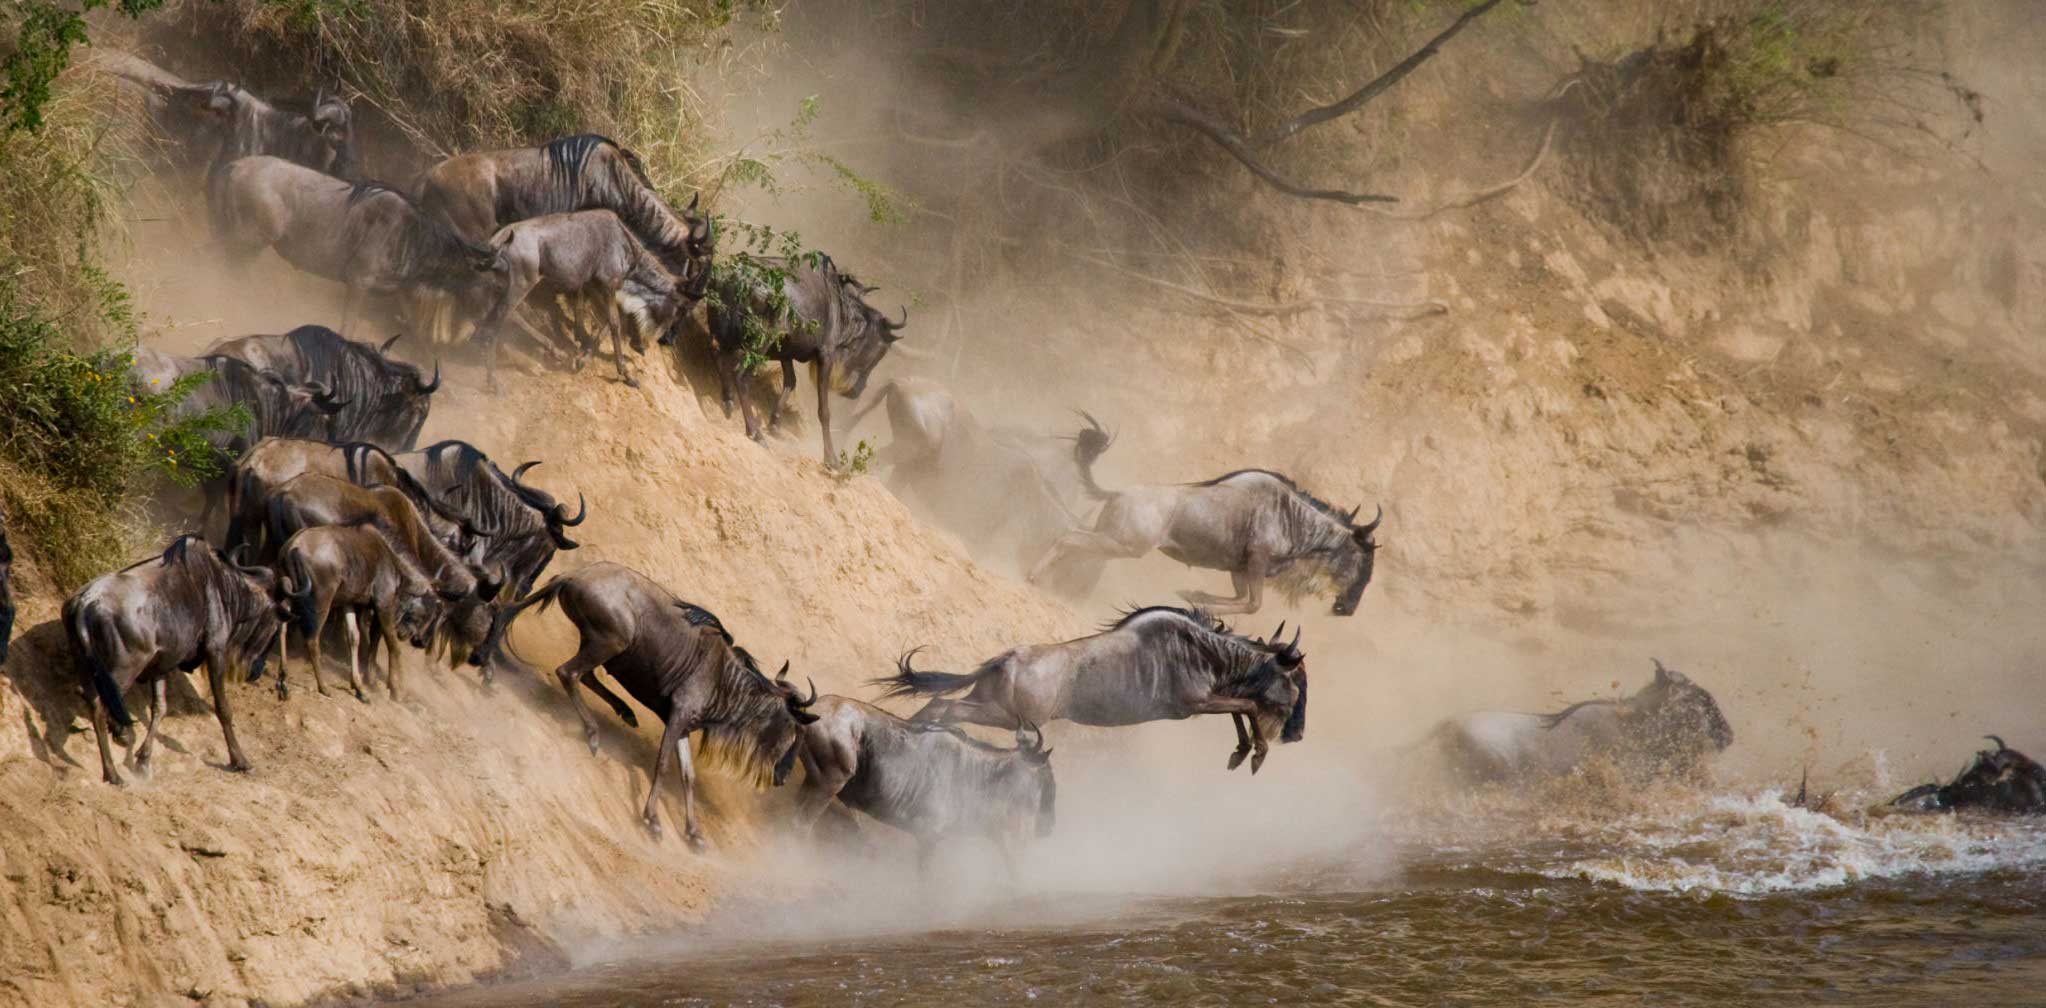 Northern Serengeti Wildebeest Migration Safaris